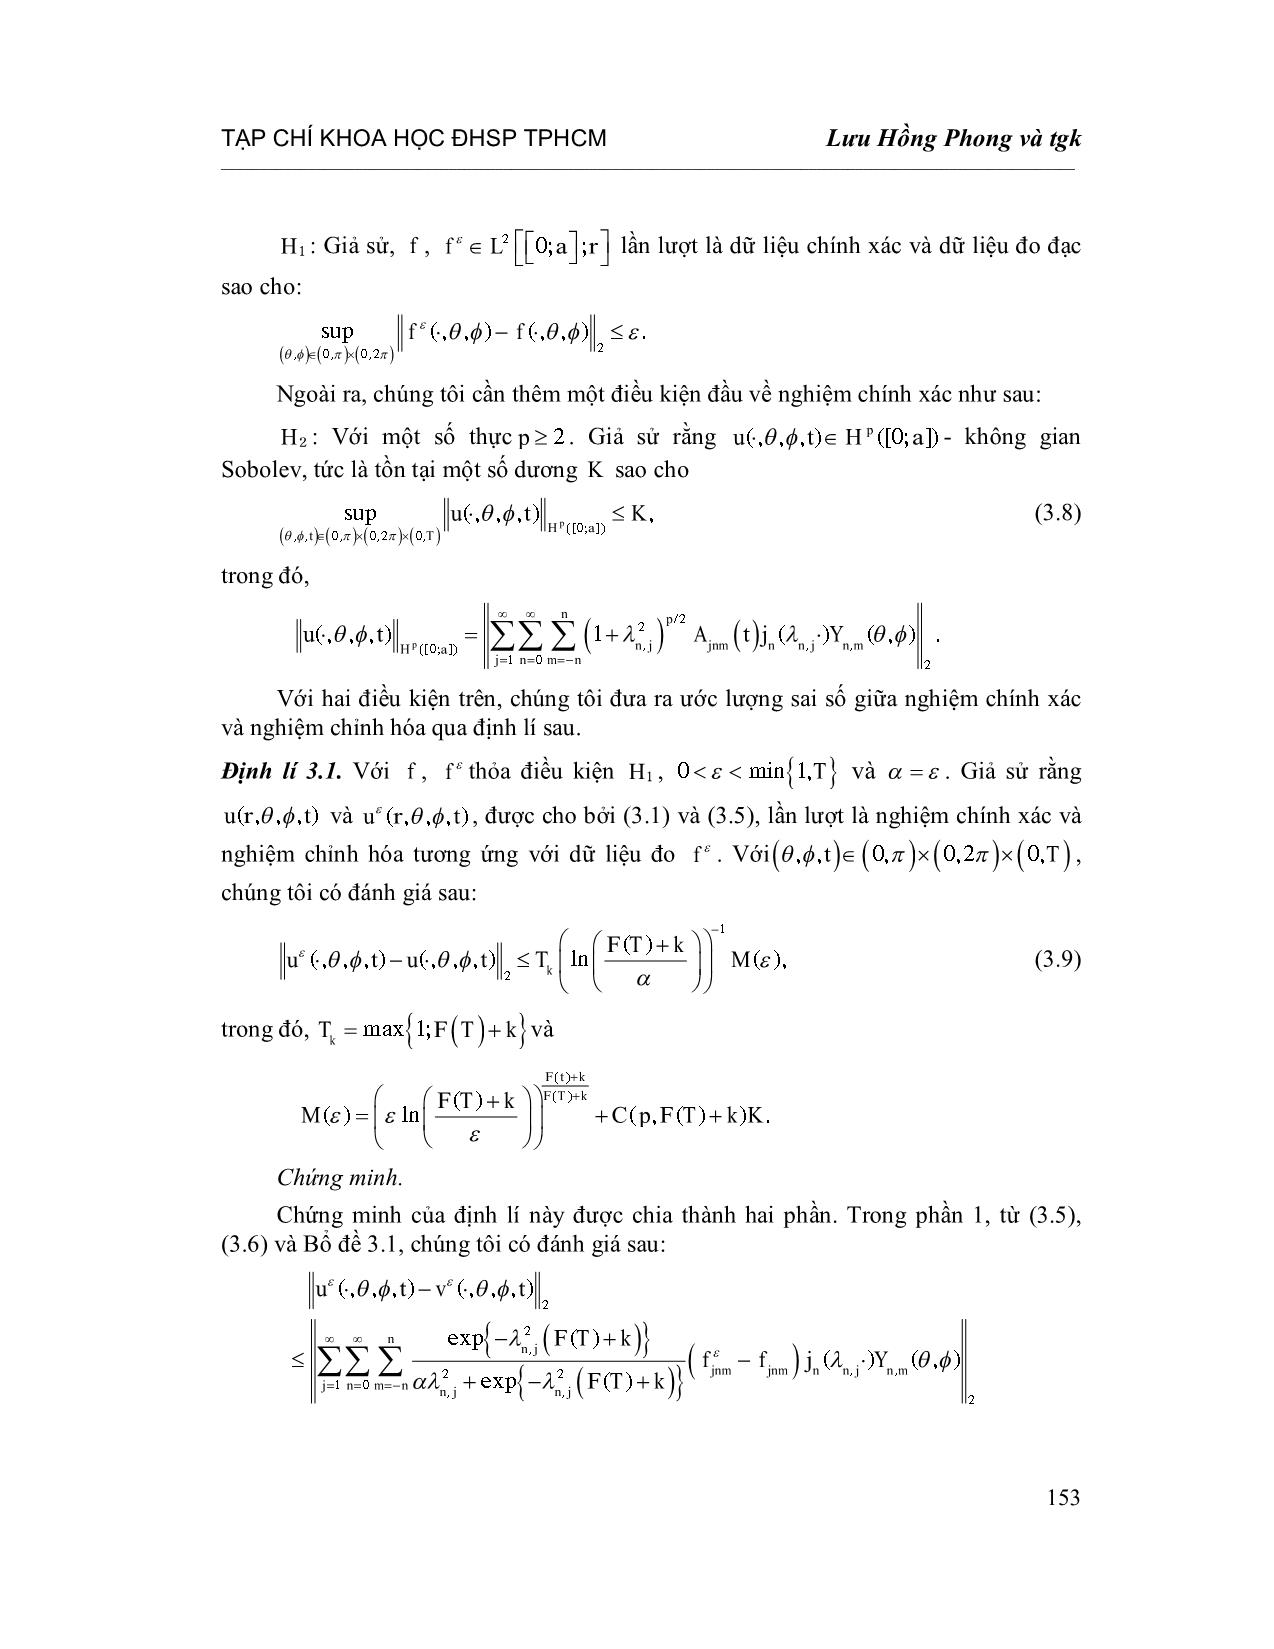 Chỉnh hóa bài toán nhiệt ngược với hệ số phụ thuộc thời gian trong tọa độ cầu trang 9